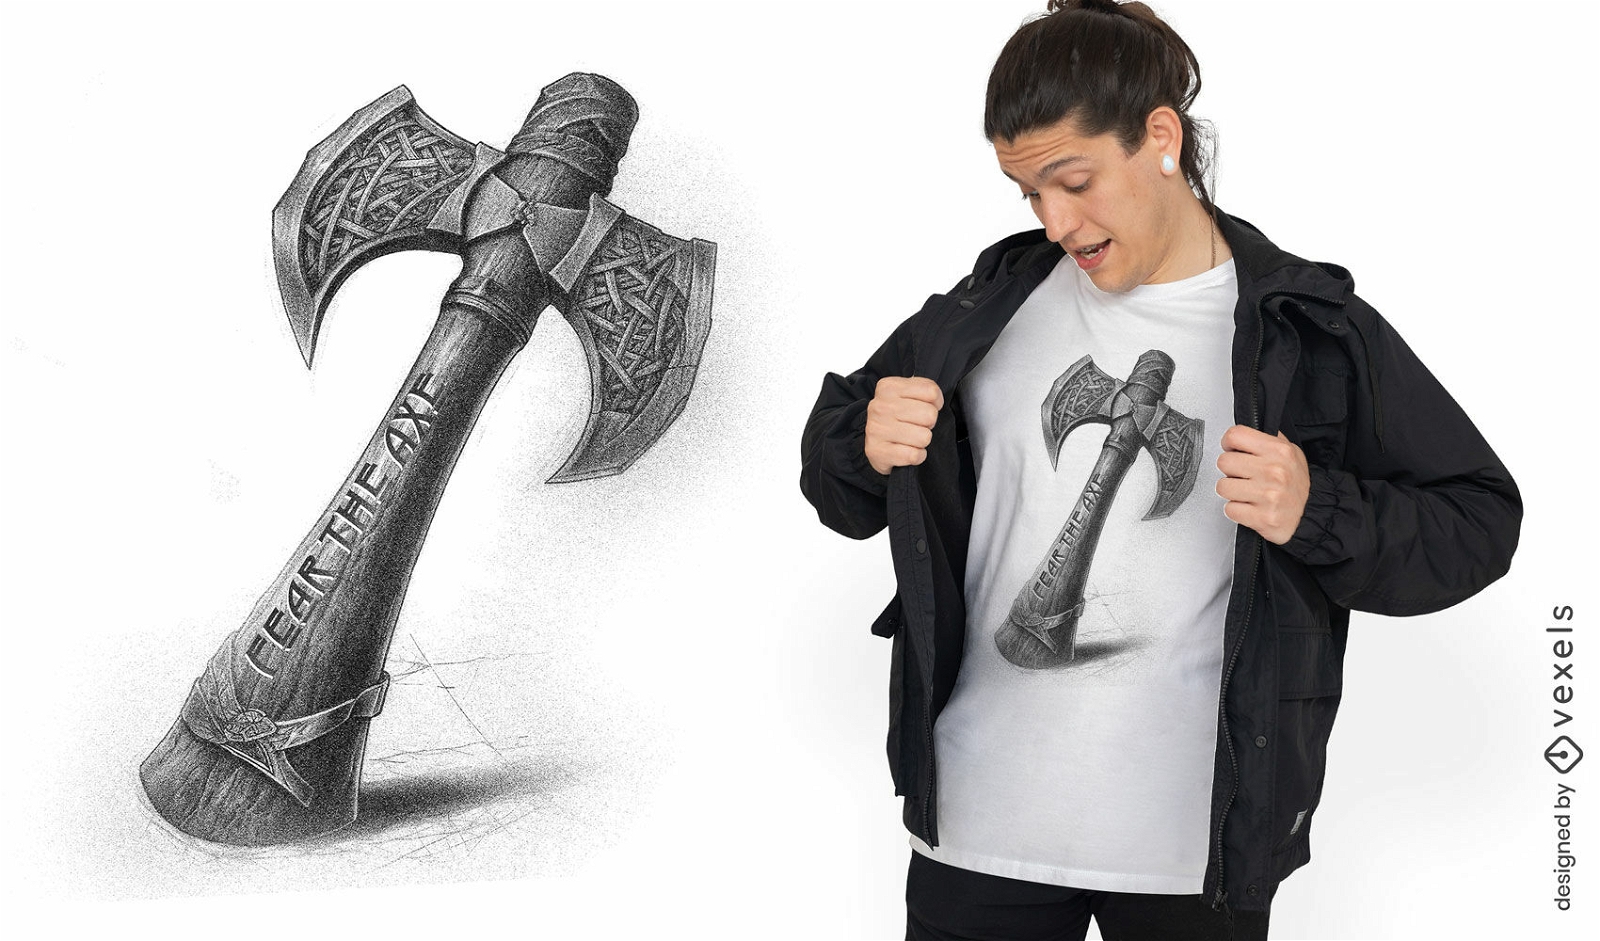 Norse axe t-shirt design